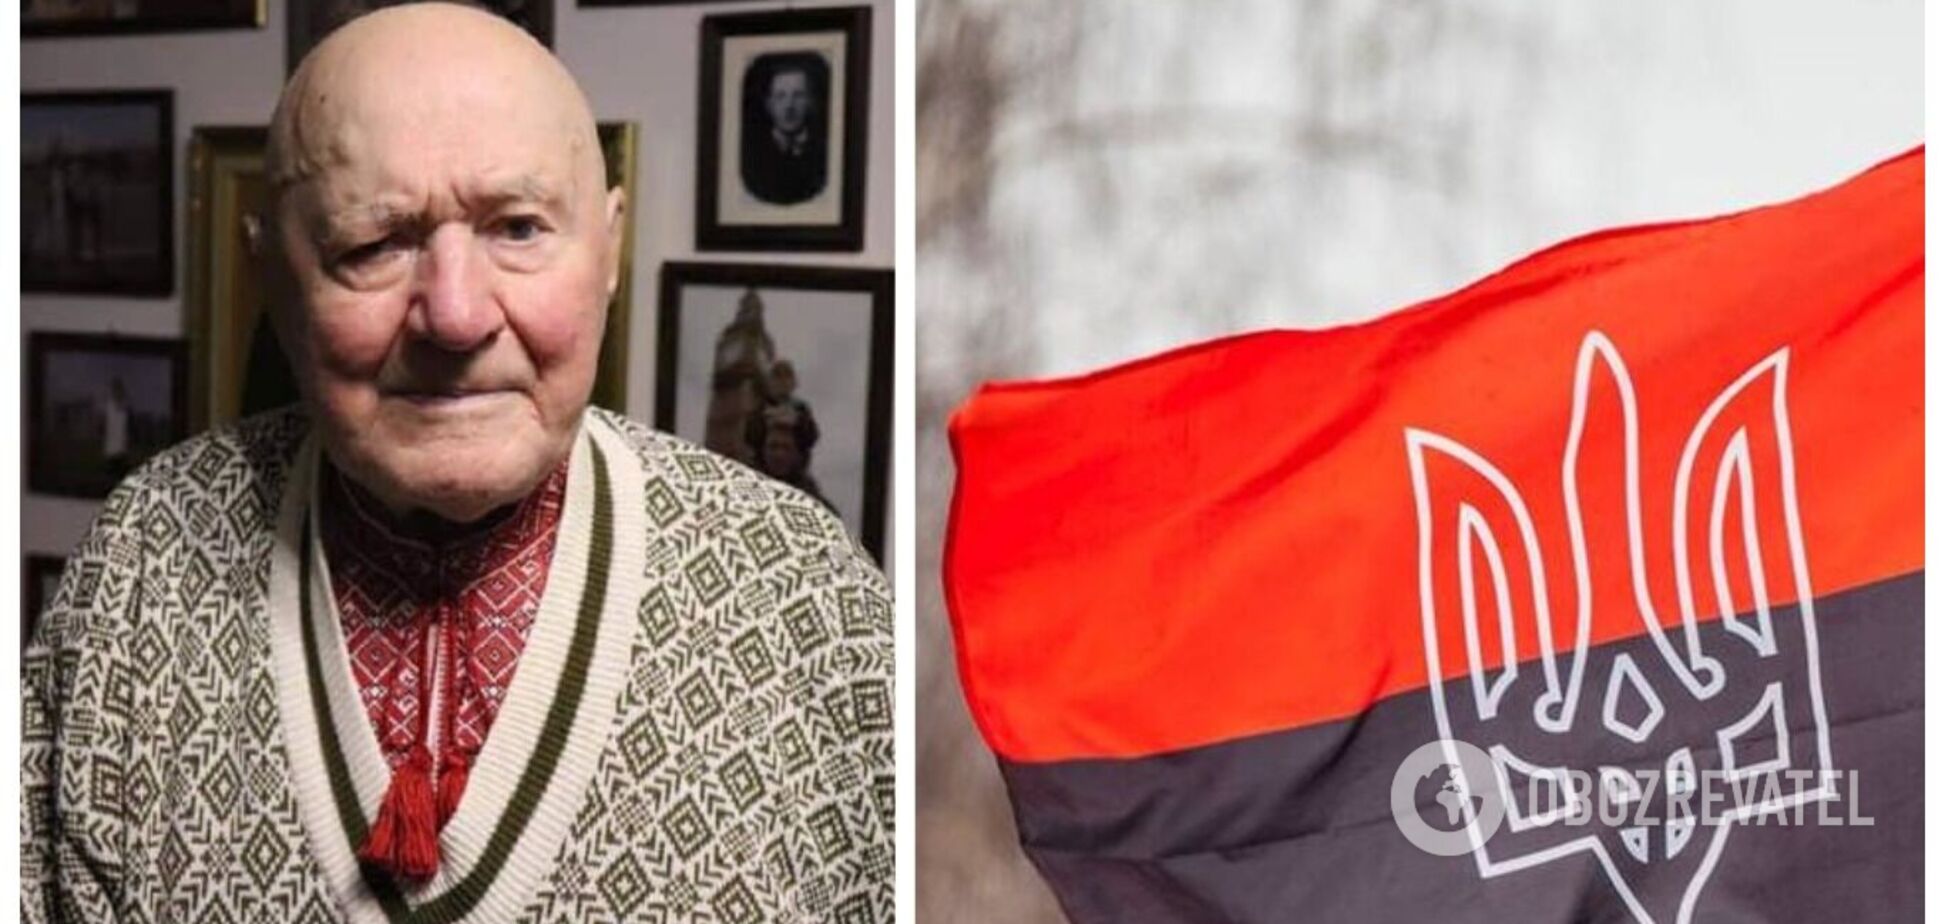 Легенде повстанческого движения УПА Симчичу исполнилось 99 лет: он провел в советских лагерях и тюрьмах 32 года